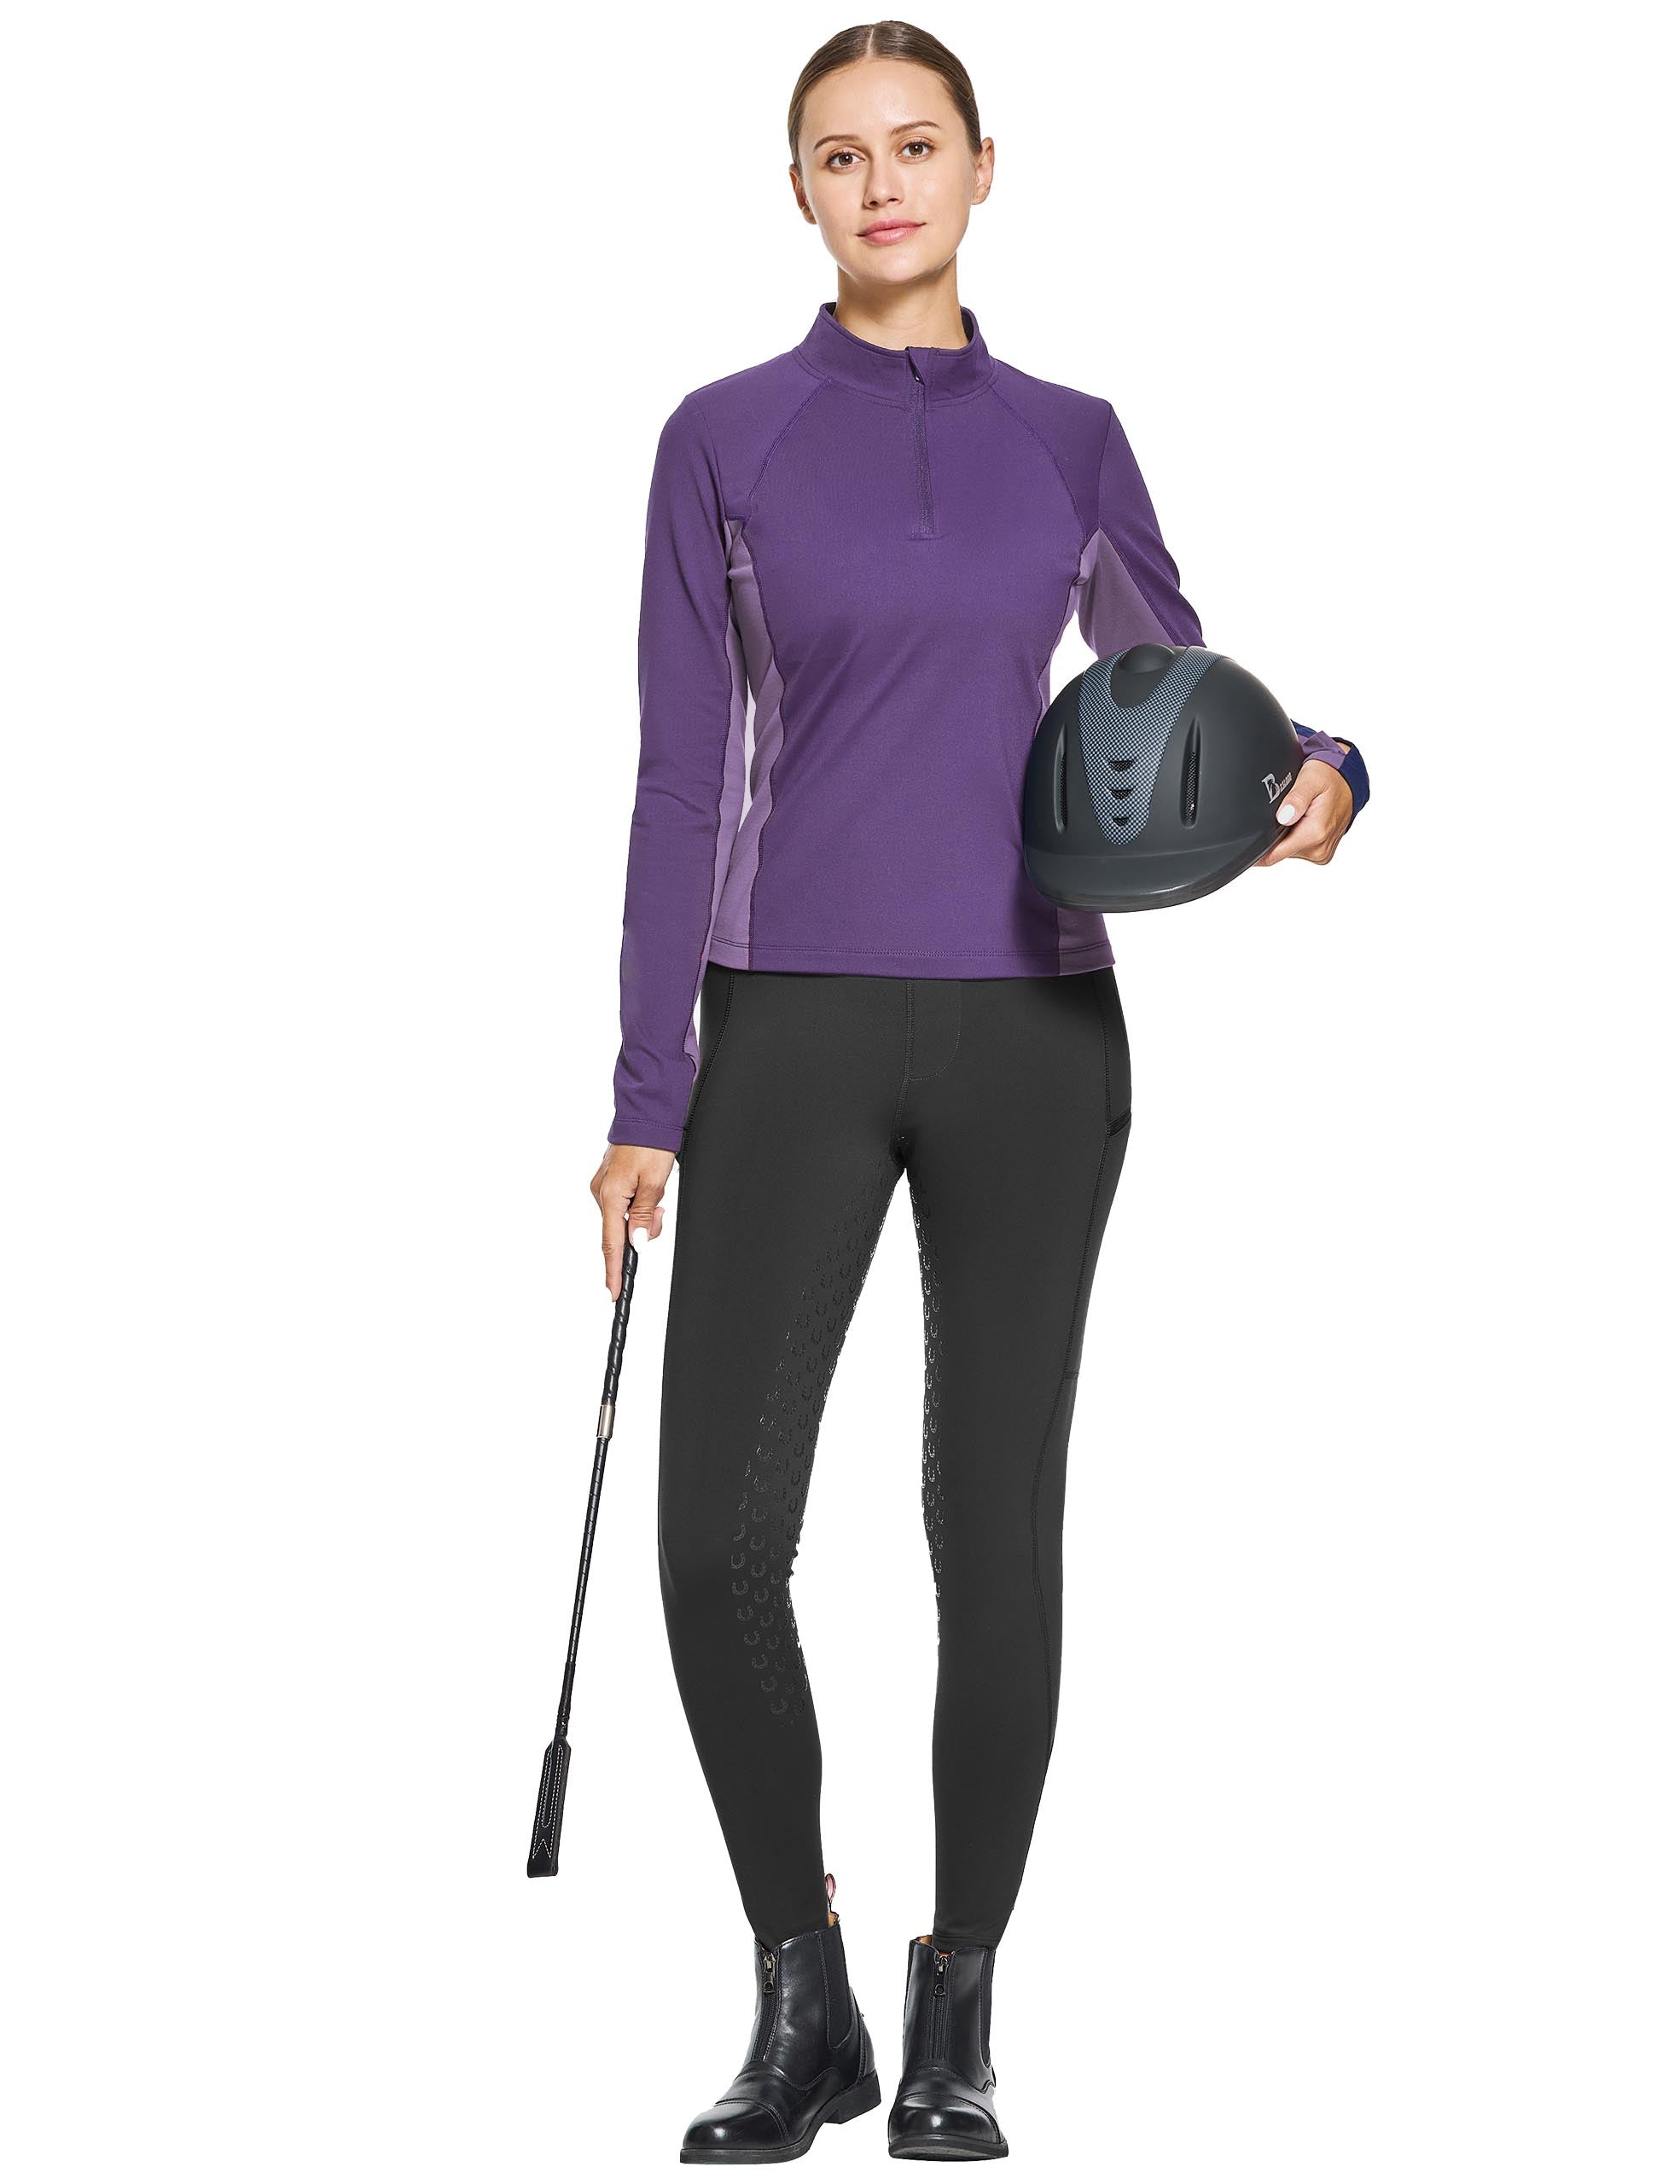 Damen-Reitshirt mit Thermofleece-Futter und halbem Reißverschluss, Laufpullover, sportliches Skishirt mit Daumenlöchern 